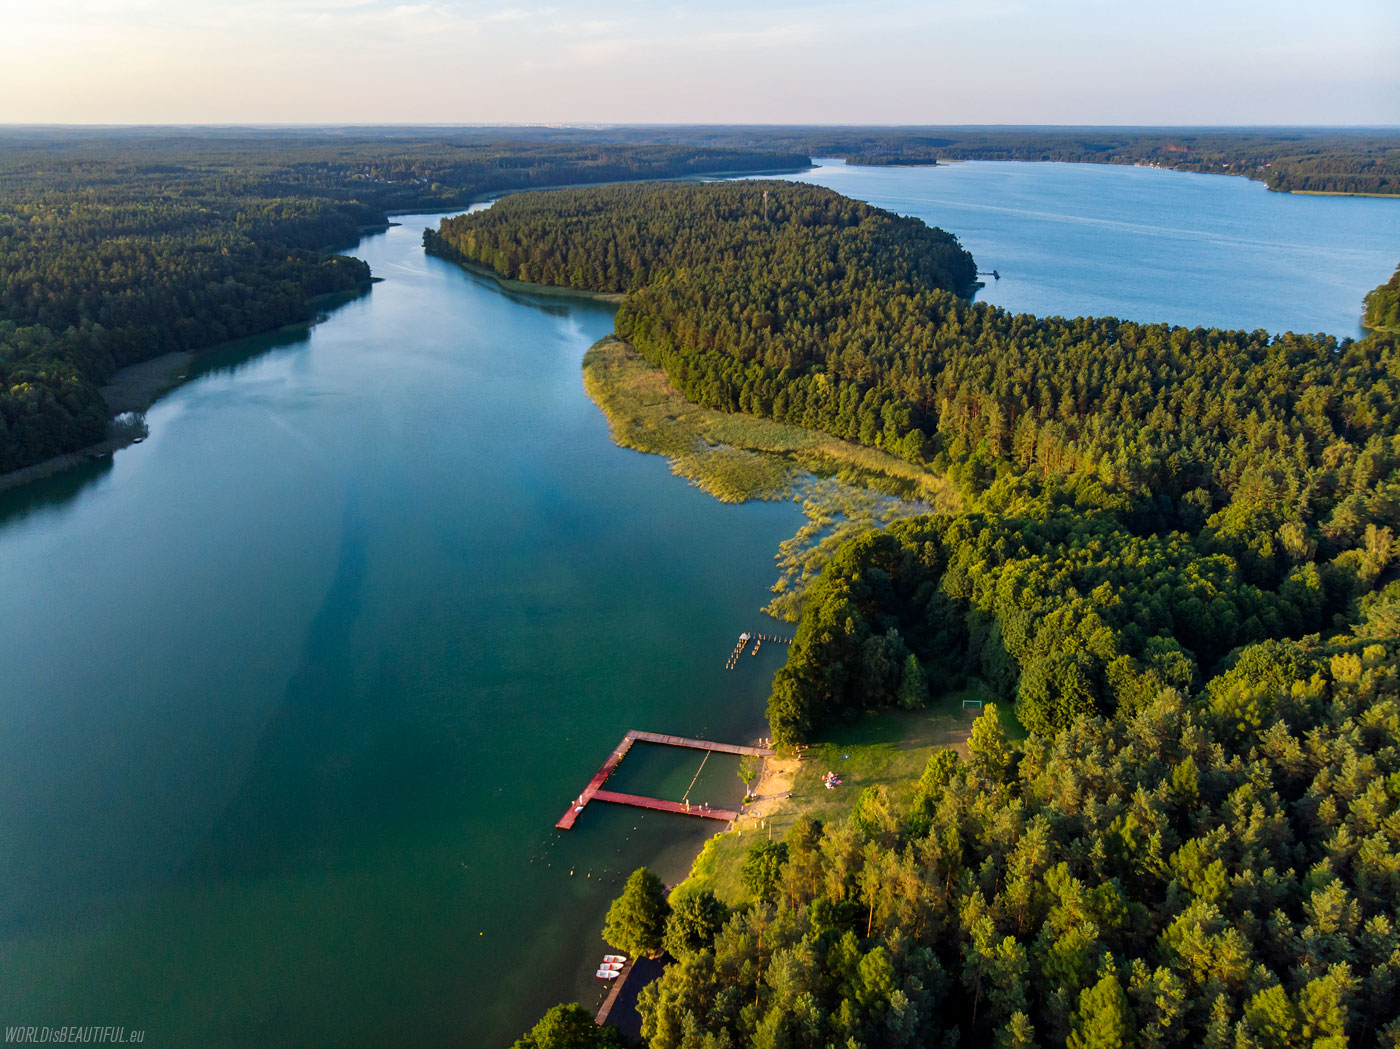 Lakes near Olsztynek in Poland